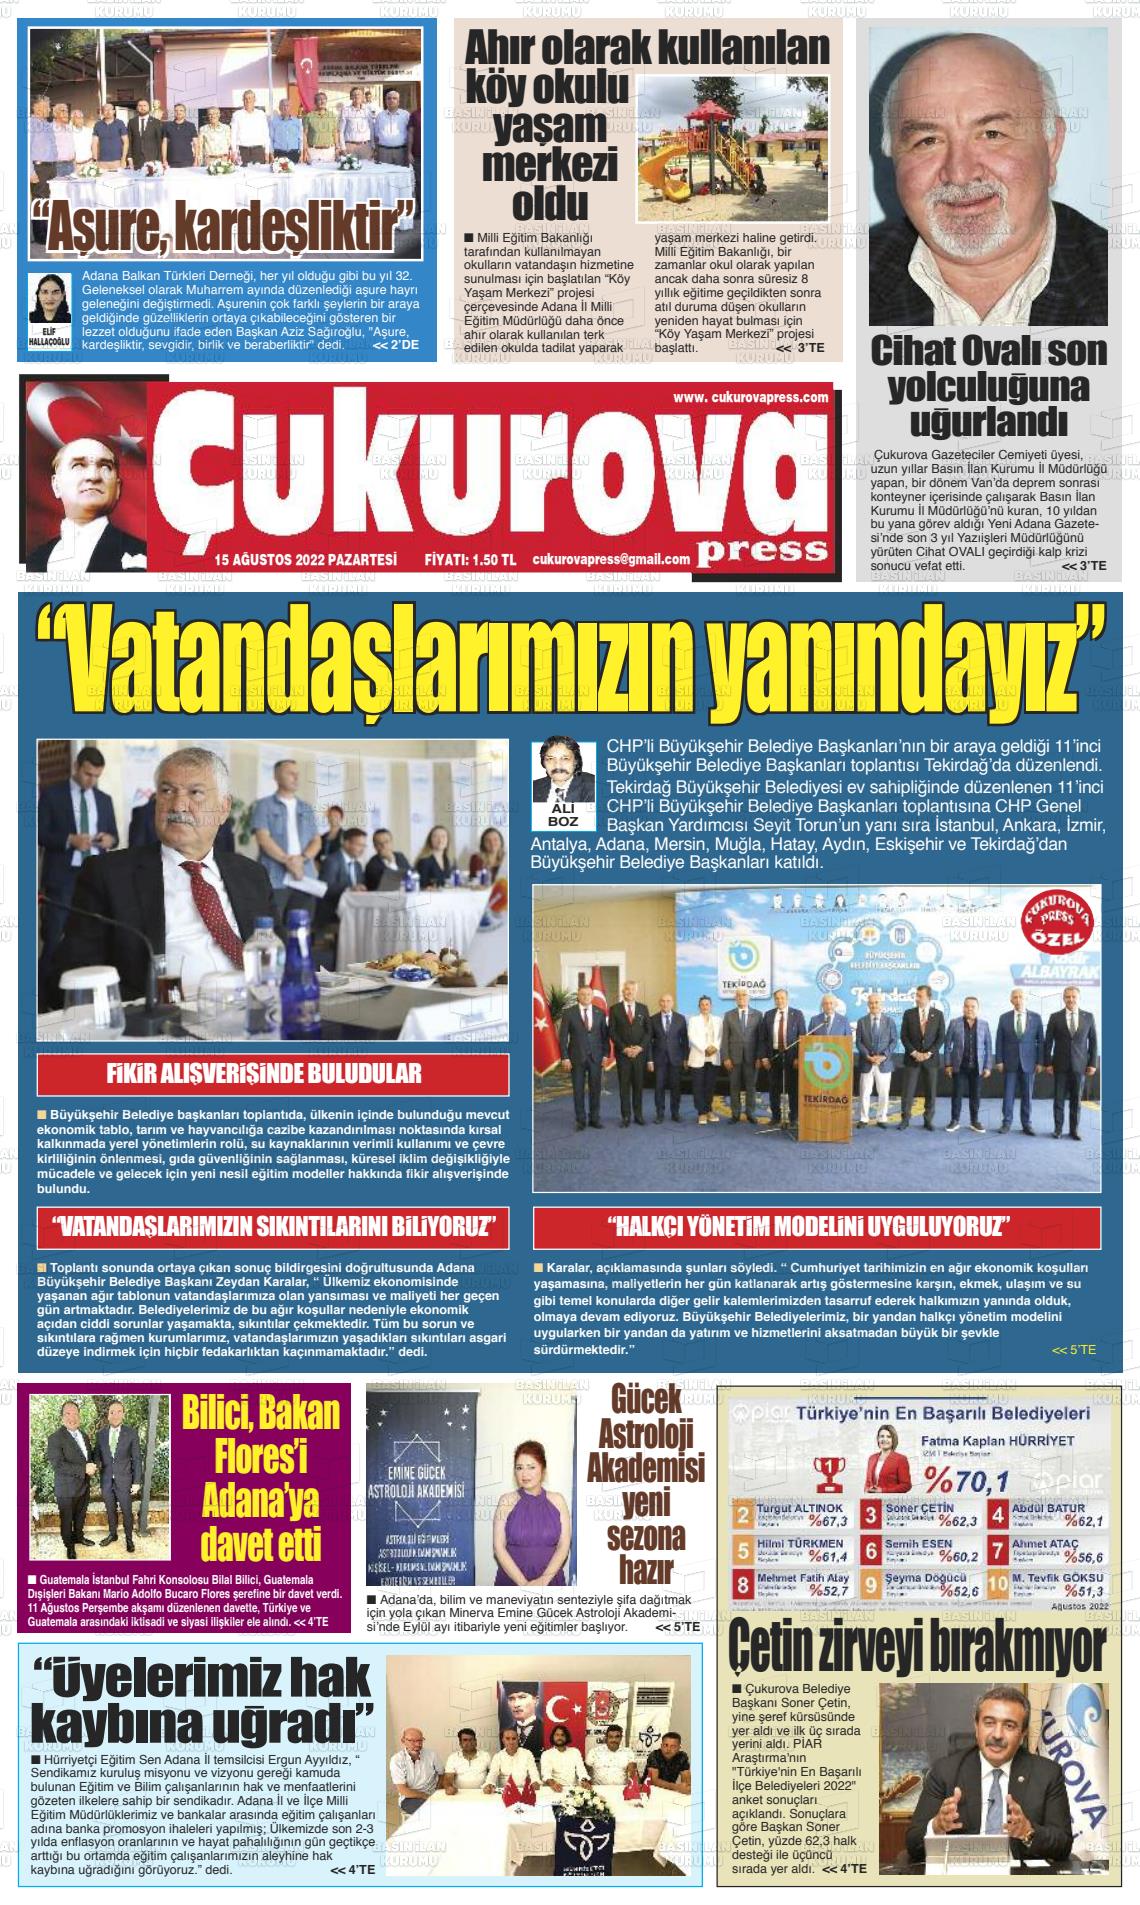 15 Ağustos 2022 Çukurova Press Gazete Manşeti